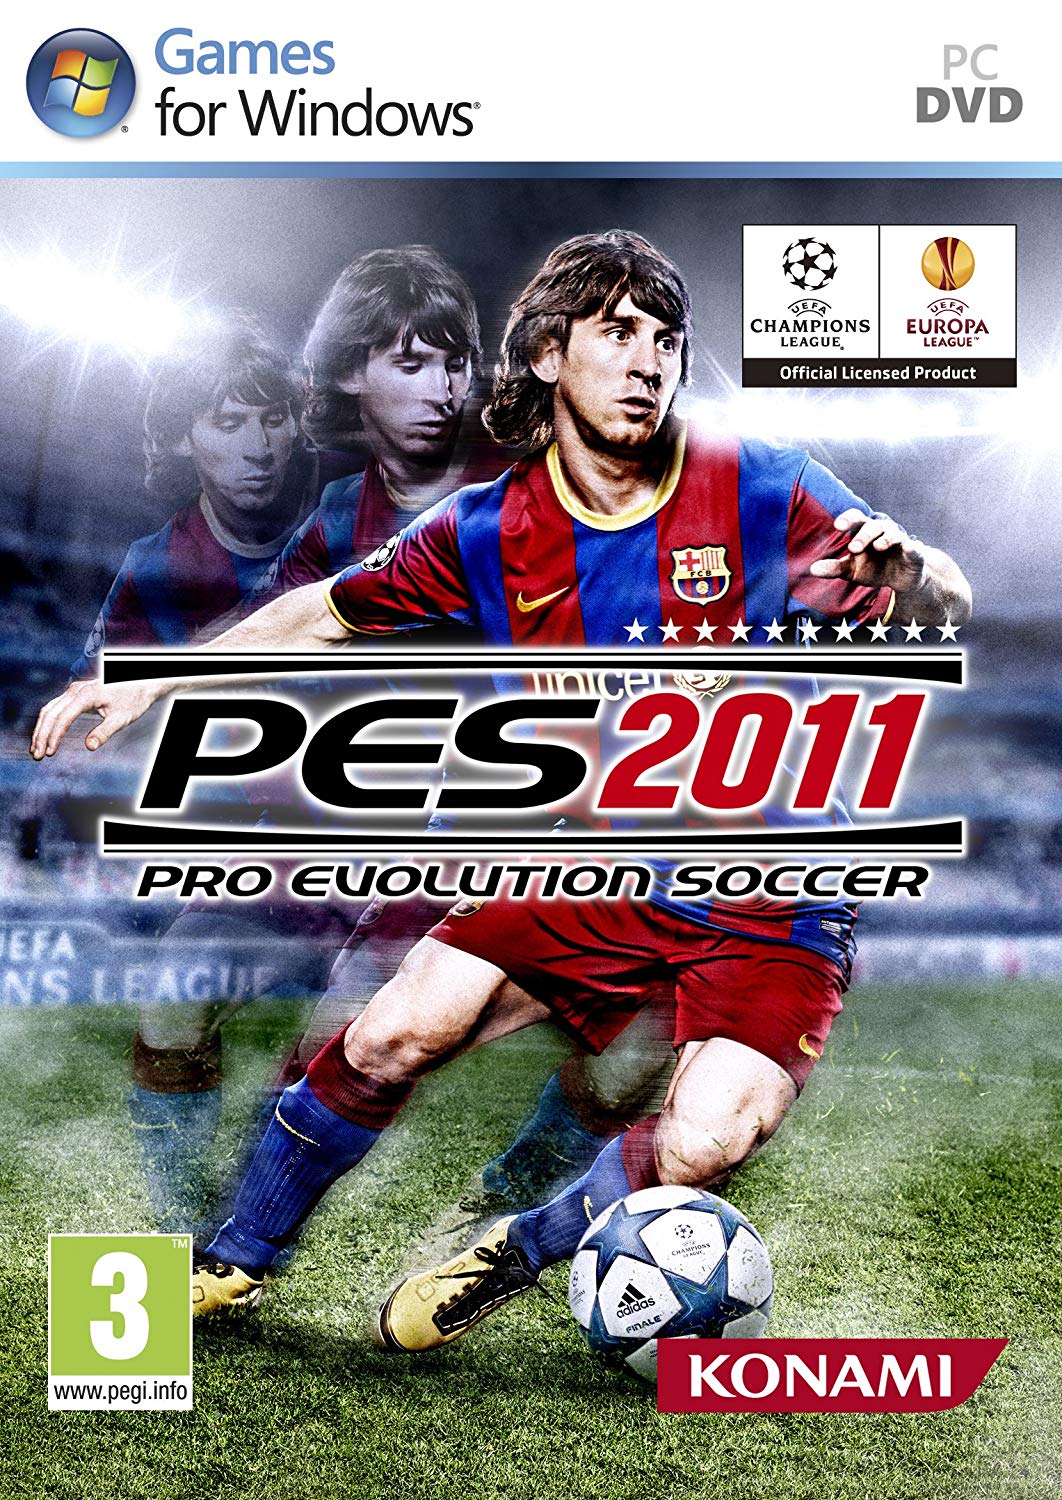 تحميل لعبة Pro Evolution Soccer 2011 بحجم 3 GB للكمبيوتر مجاناً